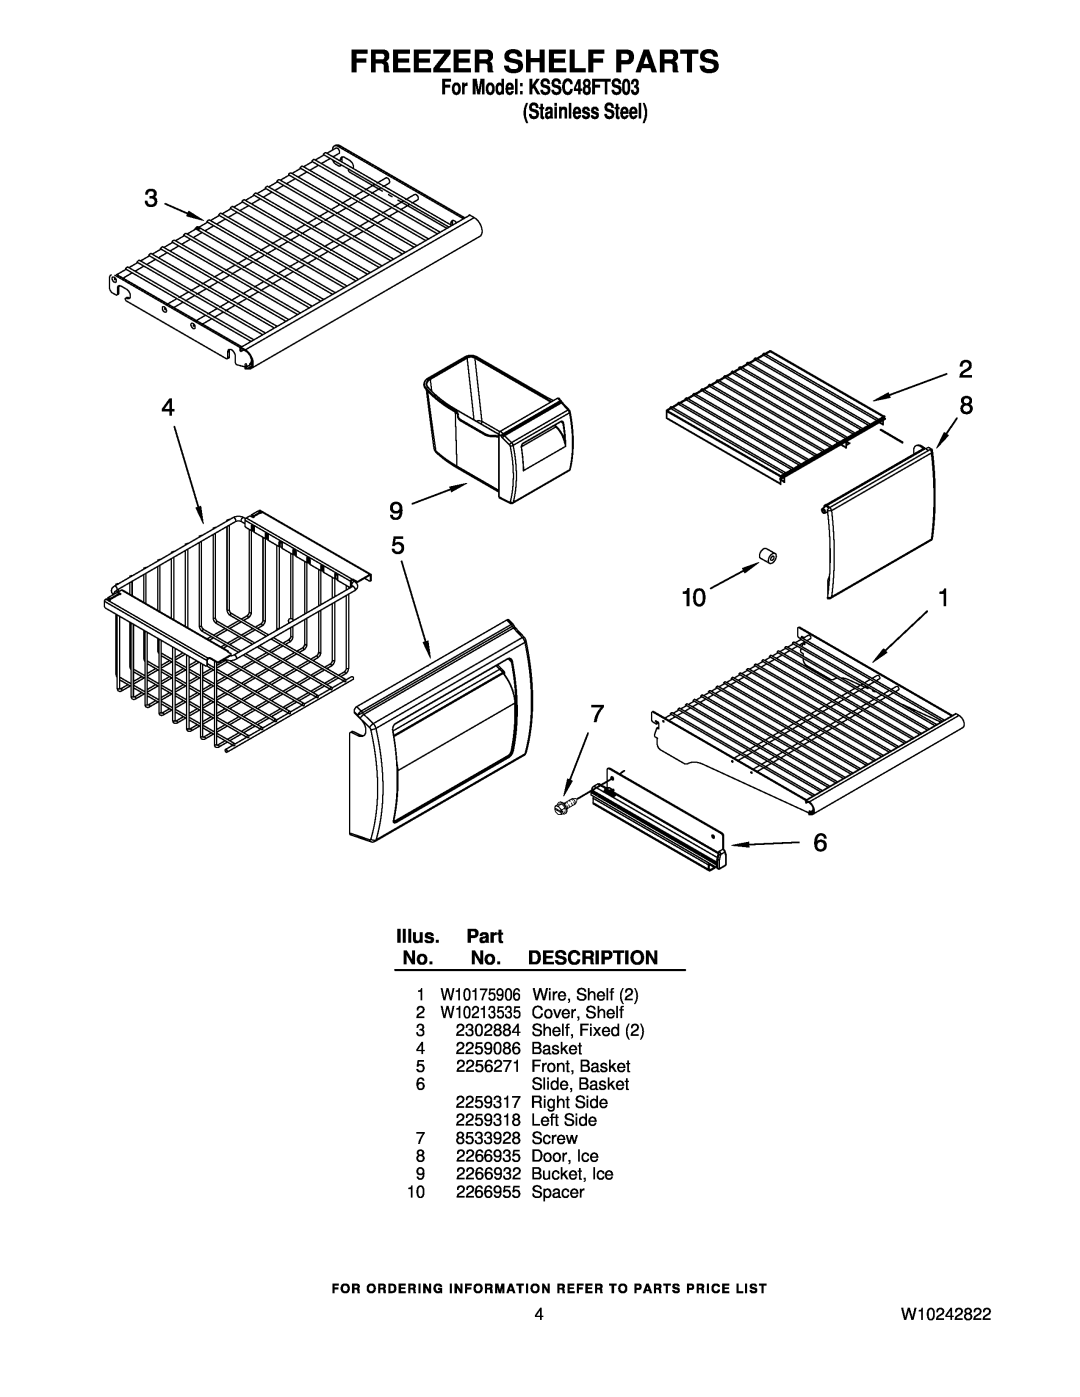 KitchenAid manual Freezer Shelf Parts, For Model KSSC48FTS03 Stainless Steel, Illus. Part No. No. DESCRIPTION, W10242822 